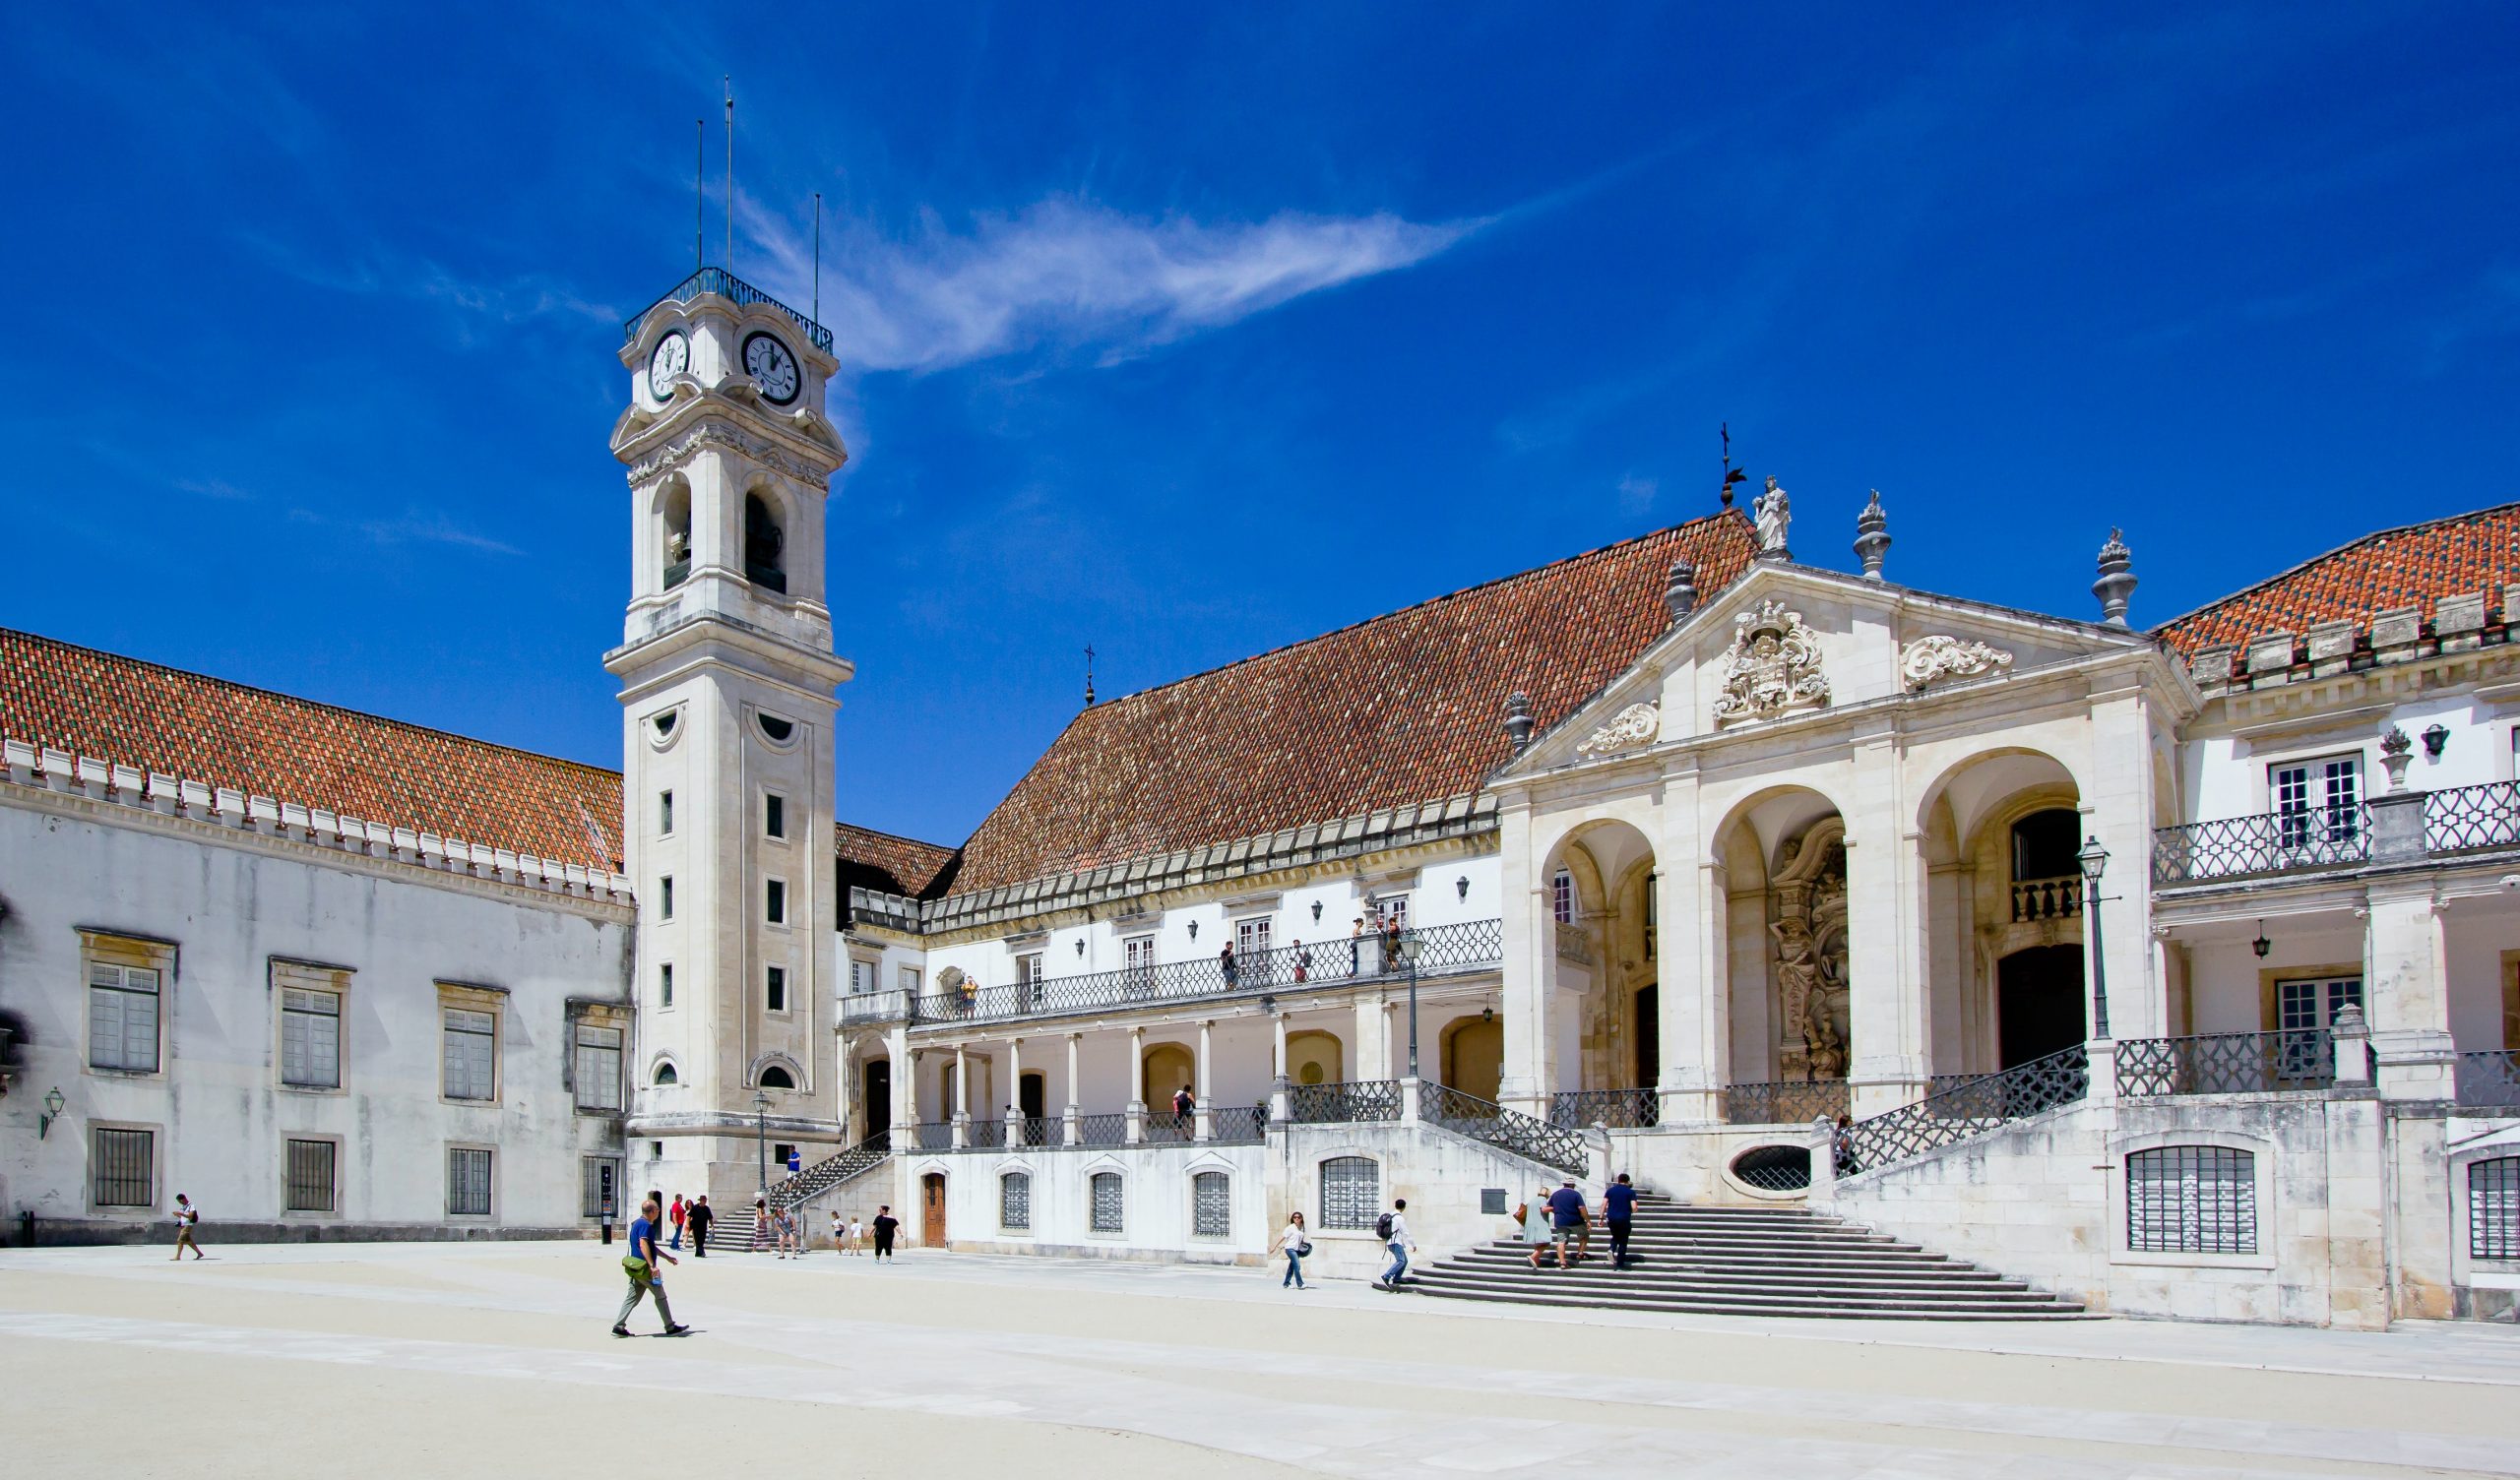 Primeiro congresso “Filosofia do Desporto” acontece em Novembro em Coimbra. Terá quase 80 oradores